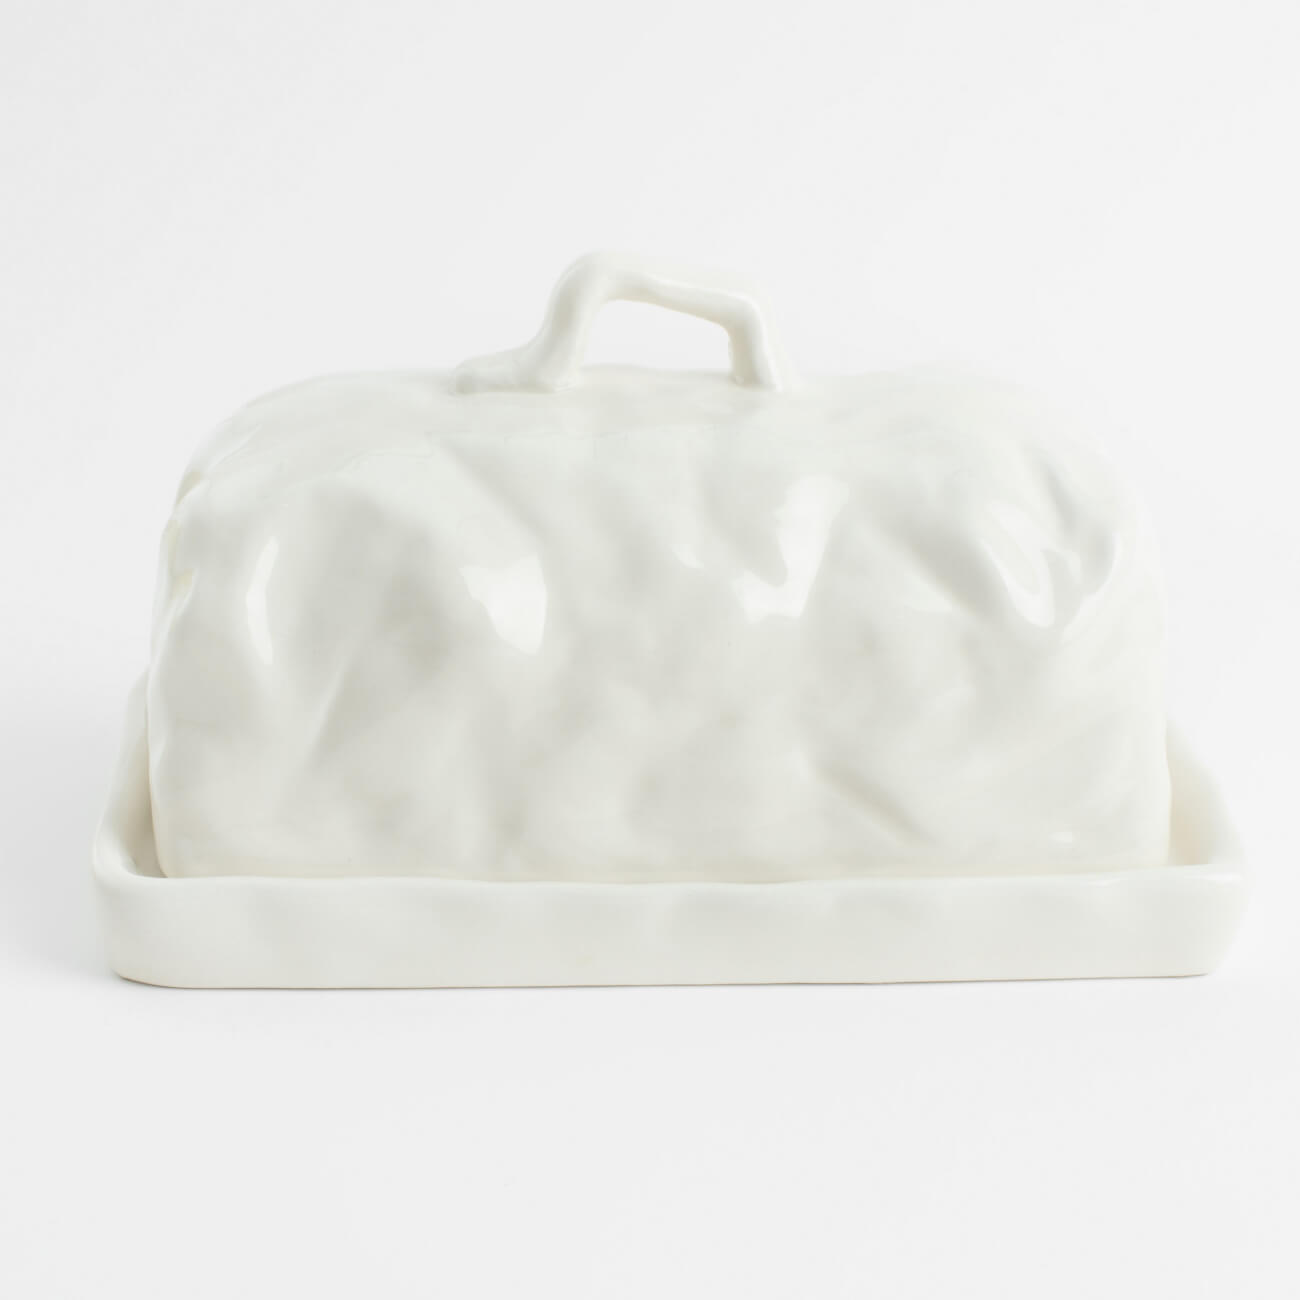 масленка 16 см керамика прямоугольная белая ceramo Масленка, 18 см, керамика, прямоугольная, молочная, Мятый эффект, Crumple